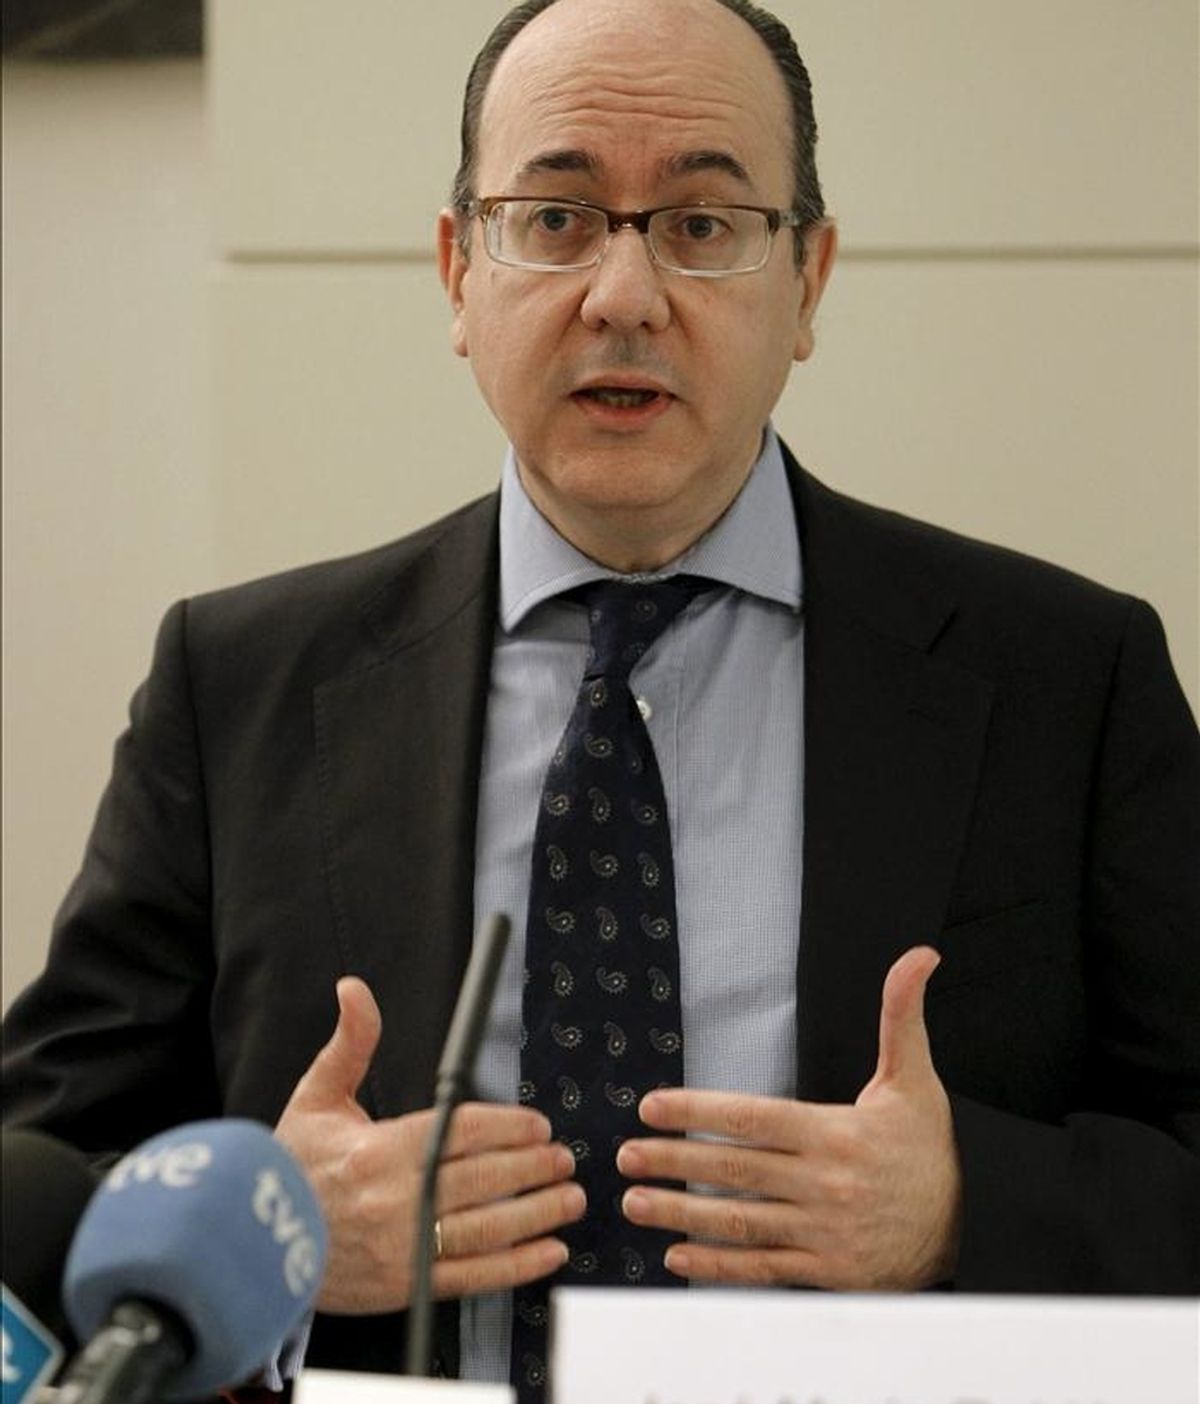 El director general de Regulación del Banco de España, José María Roldán, durante la jornada sobre la reestructuración del sector financiero que se desarrolla hoy en Madrid. EFE